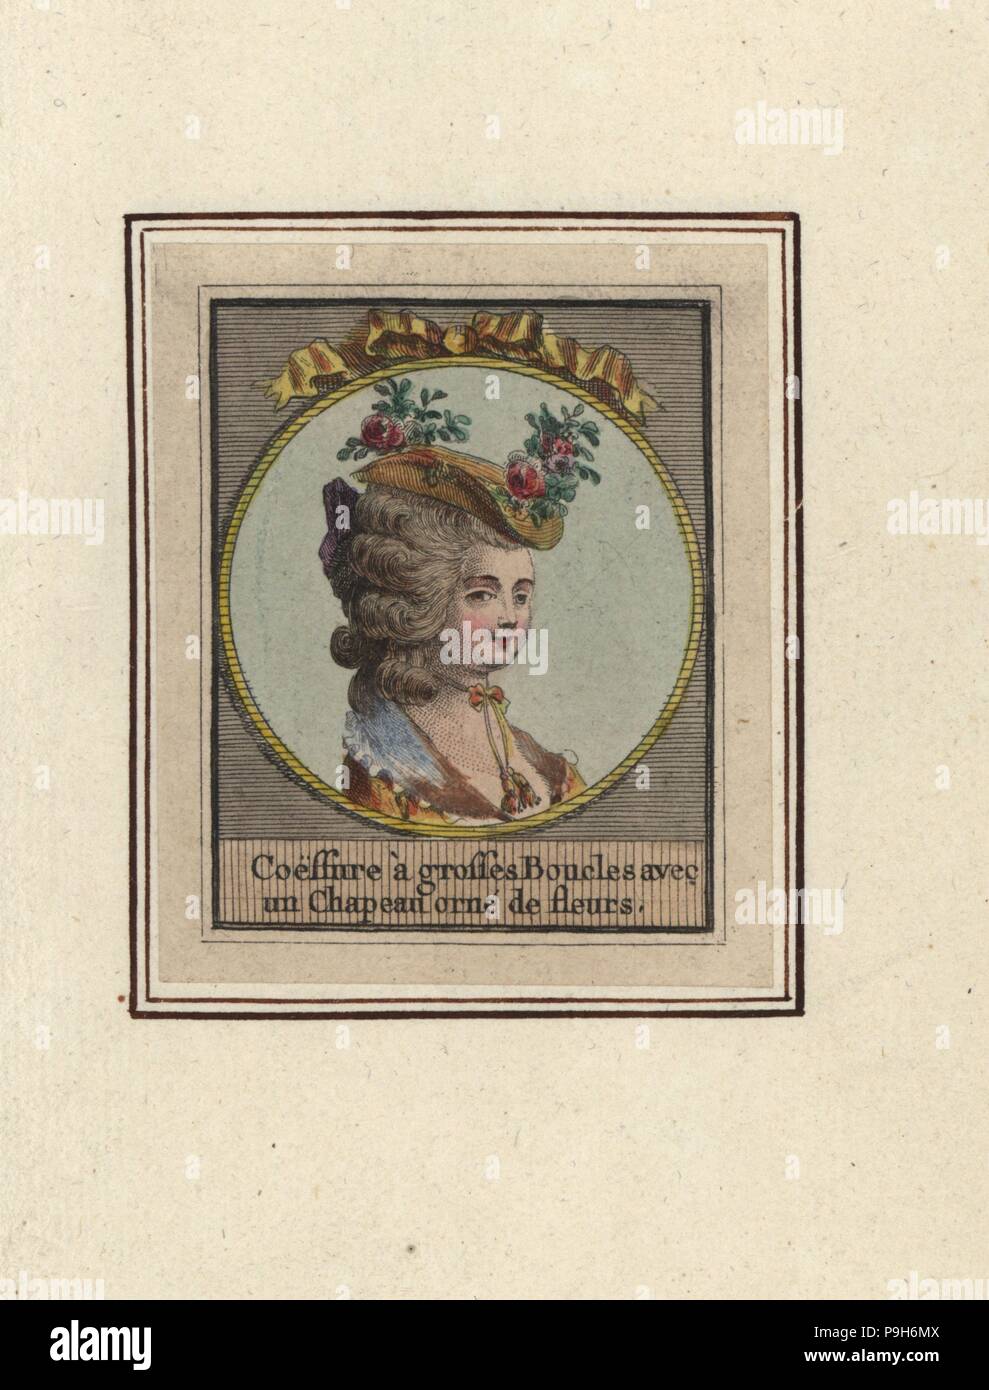 Mujer de peinado con rizos grandes y un sombrero de paja decorado con flores. Un grosses Boucles Coeffure avec un encabezamiento orne de fleurs. Copperplate Handcolored grabado por un artista desconocido de un álbum de peinados de moda de 1783, Suite des Coeffures a la Mode en 1783, Esnauts et Rapilly, París, 1783. Foto de stock